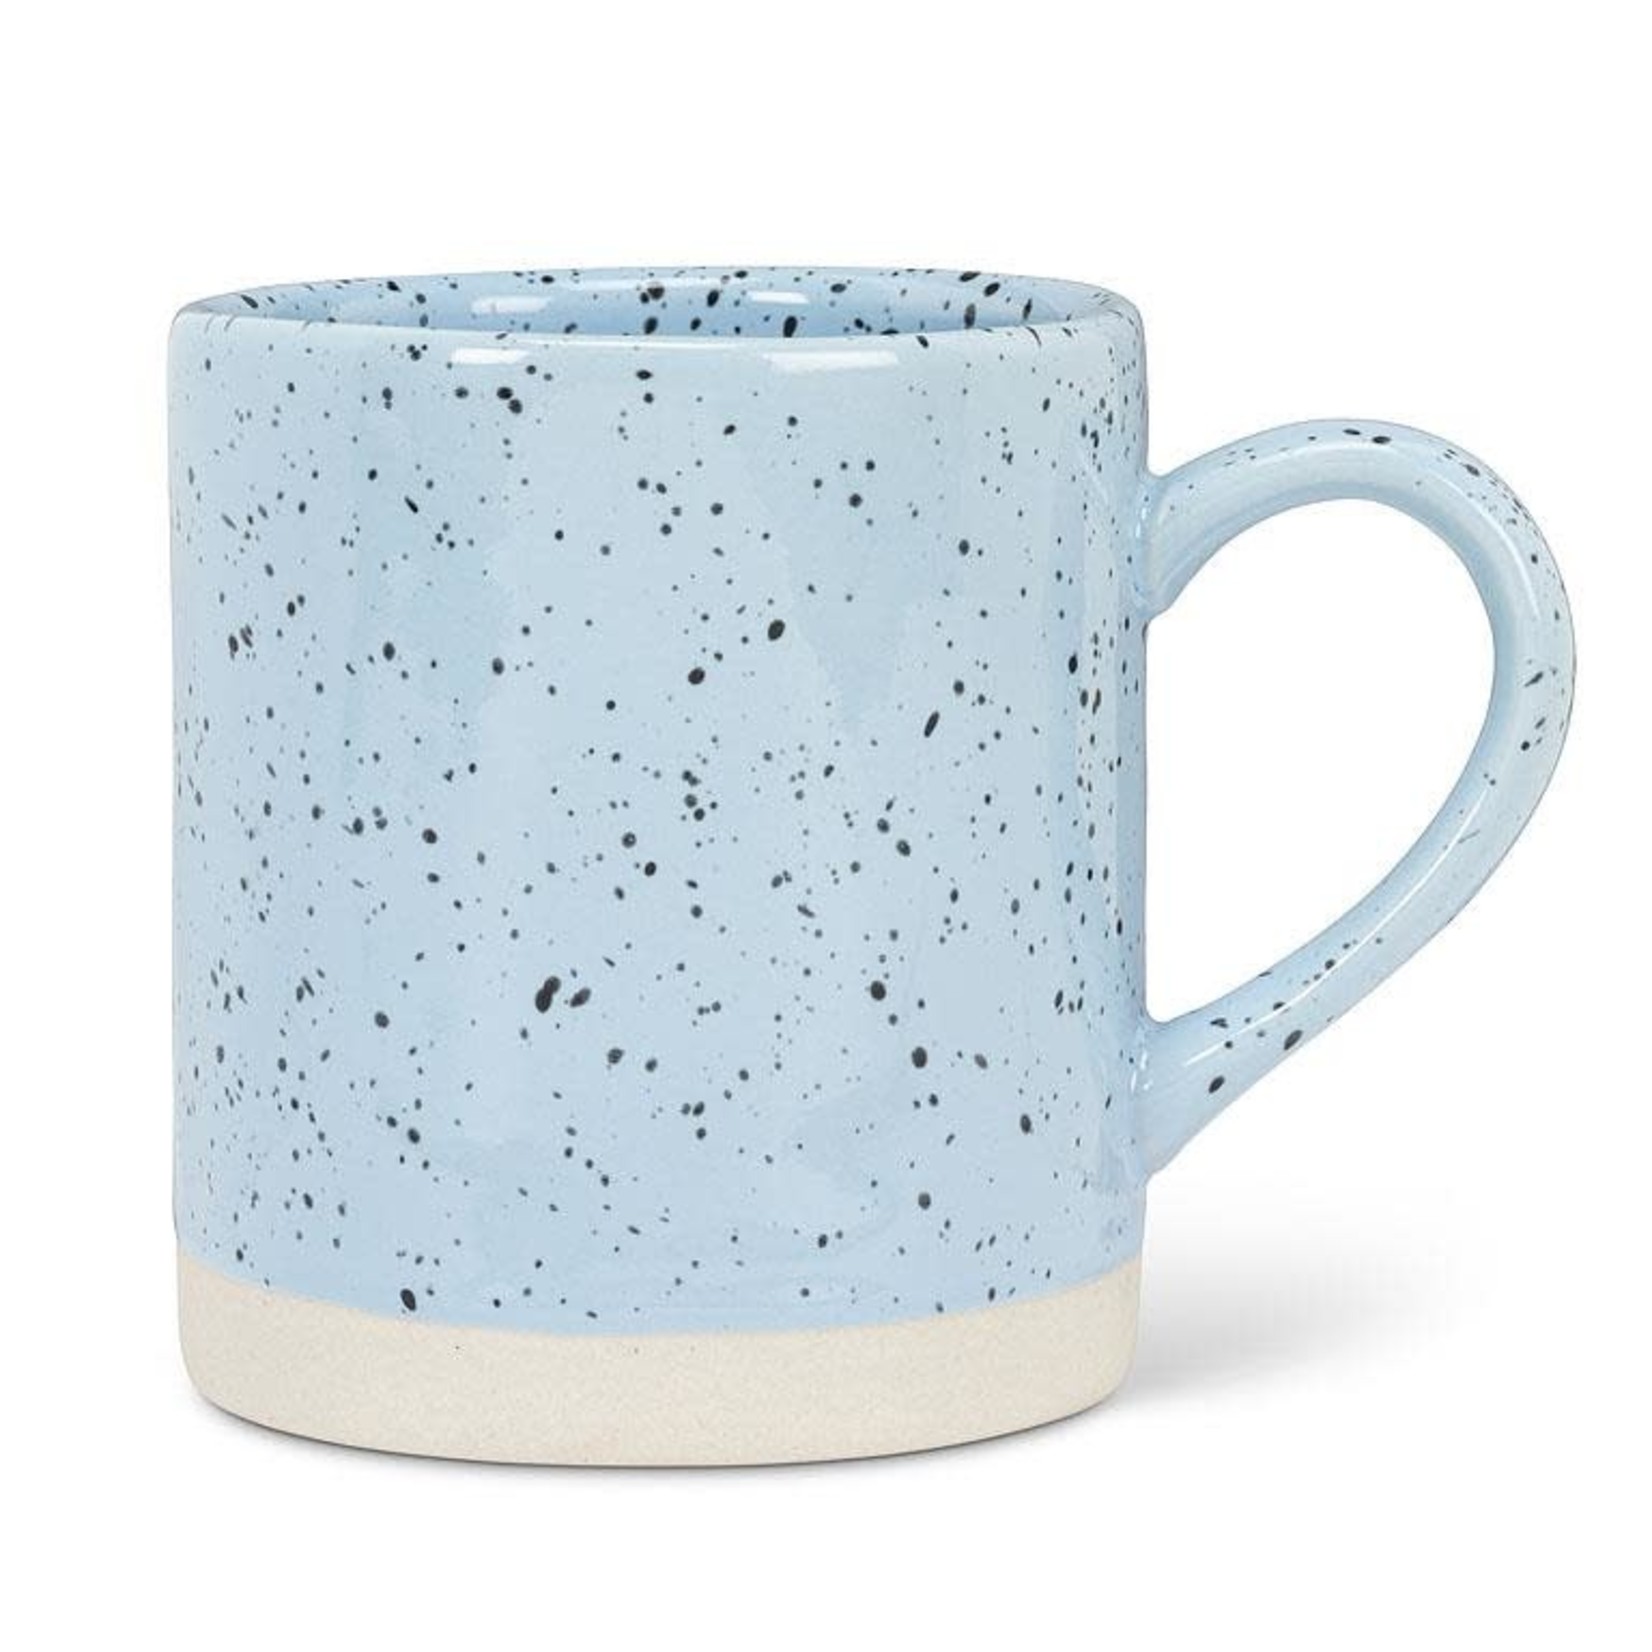 Speckled Mug